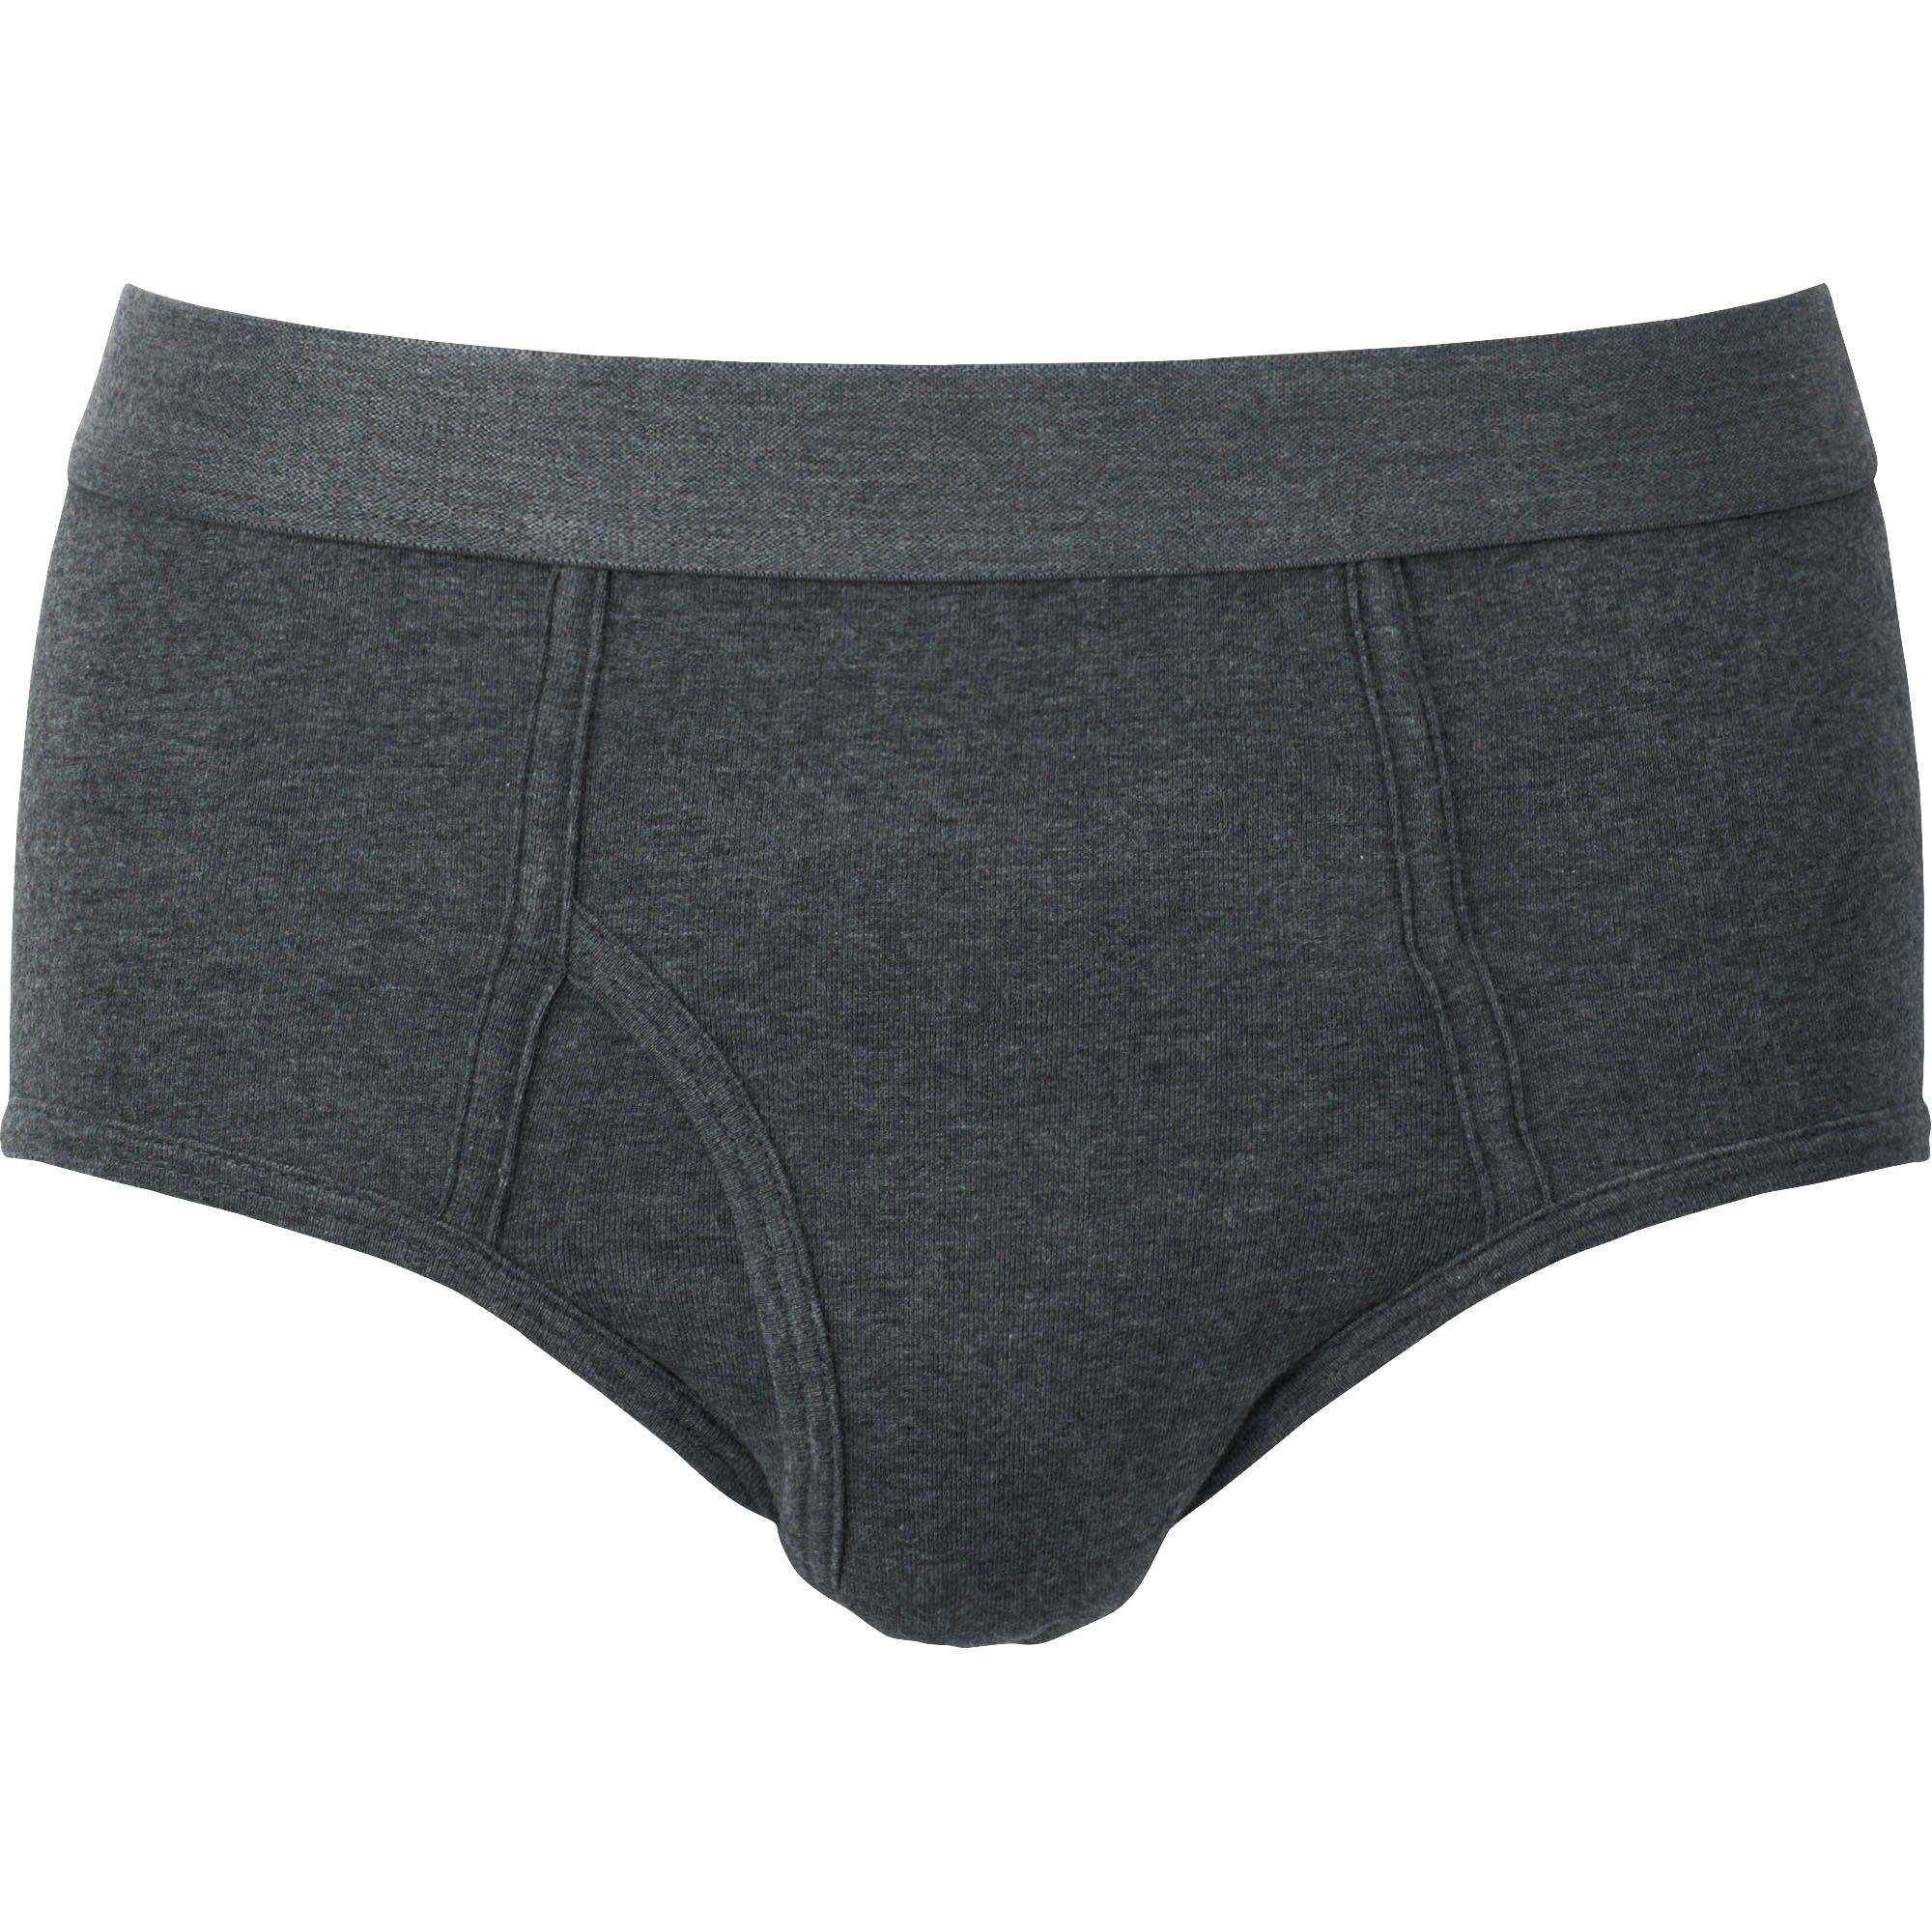 Men's Underwear, Briefs, Trunks & Boxers | UNIQLO EU